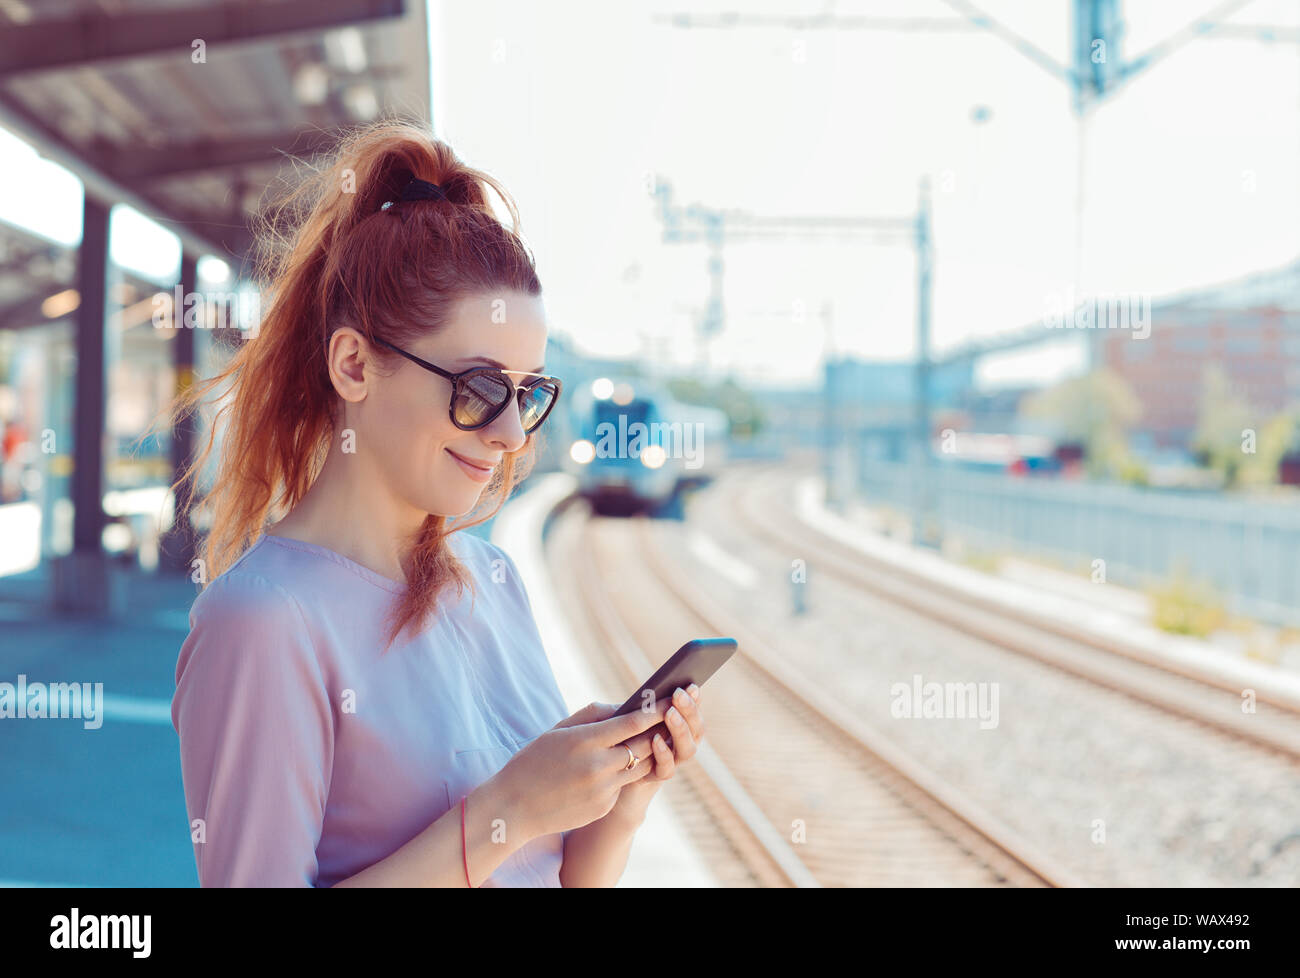 Junge Frau mit Ihrem Handy auf u-Plattform, Kontrolle Nachricht sms-e-mail oder mit der Bahn planen. Mädchen von SMS-Nachrichten auf dem Smartphone während Stadt Zug approa Stockfoto